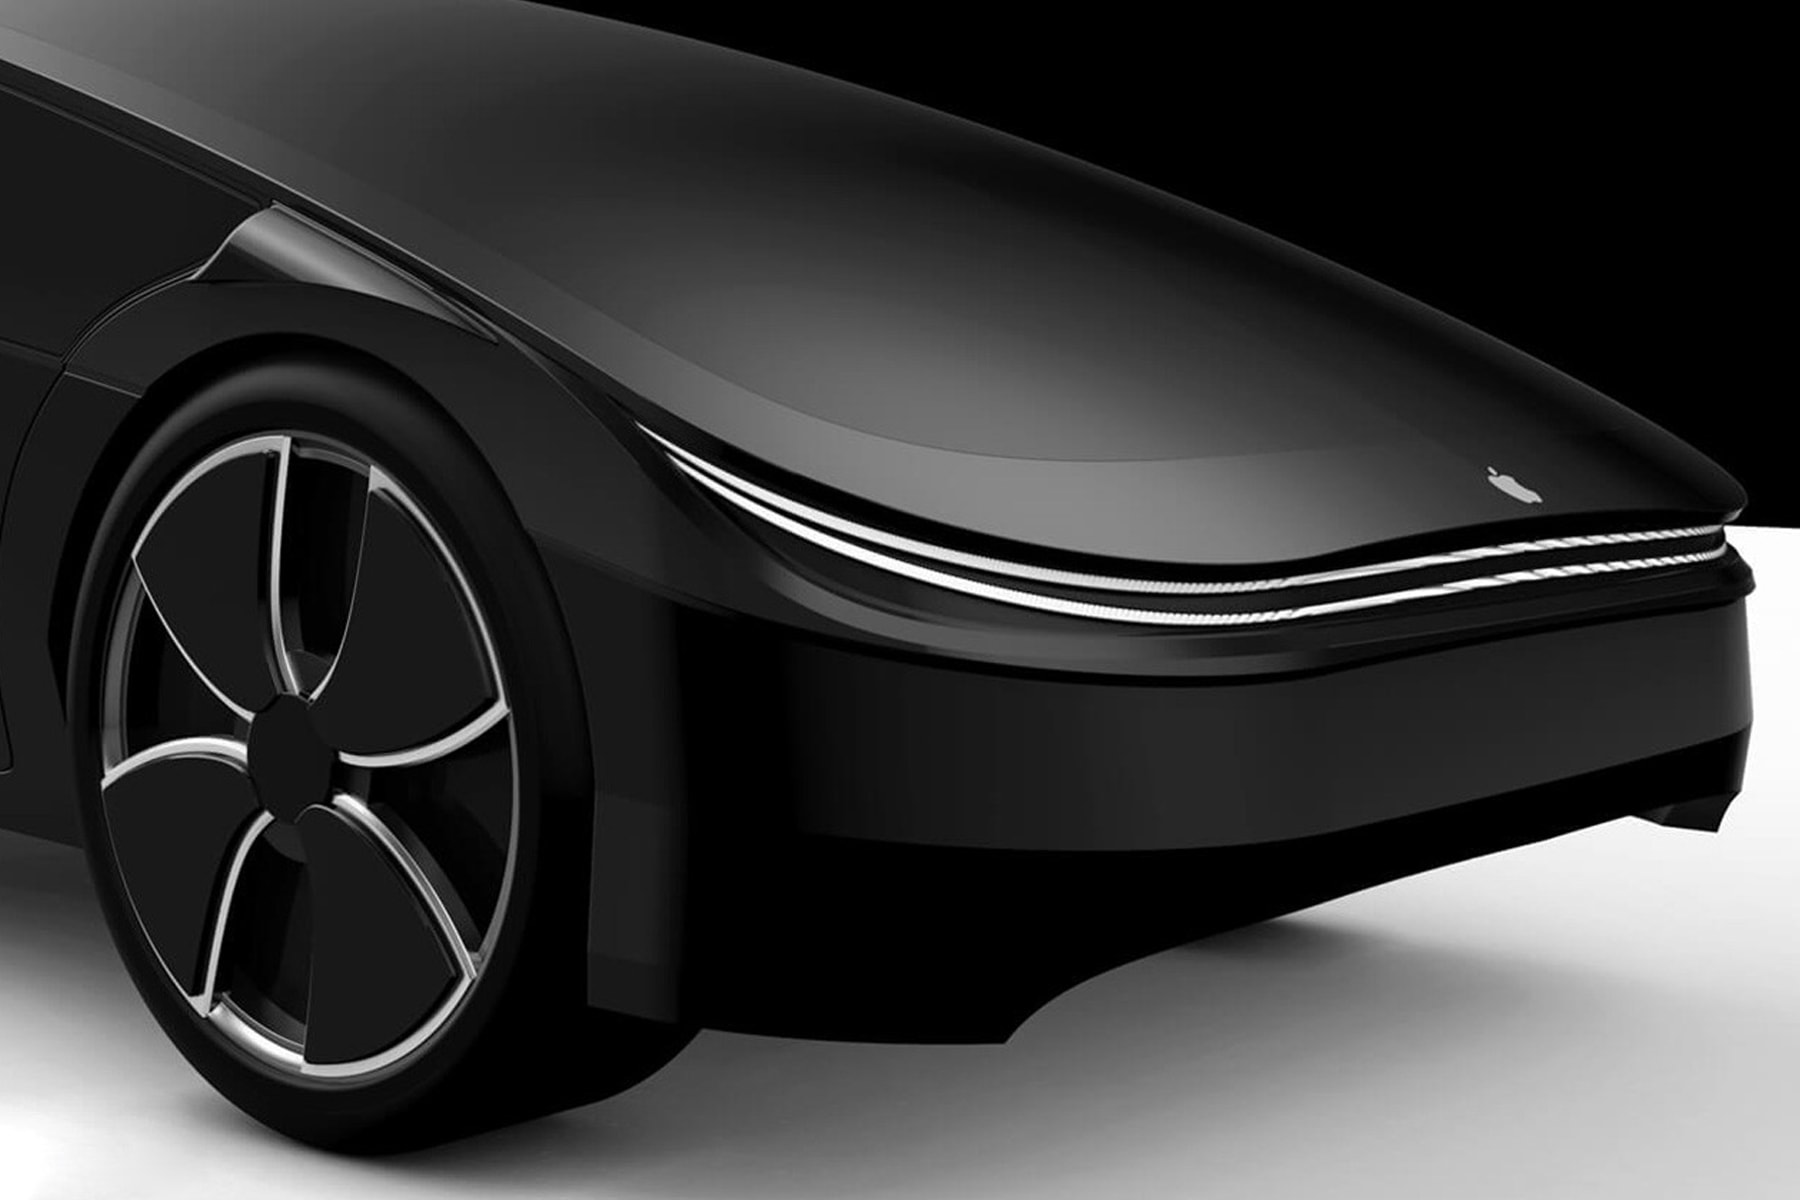 知名 Apple 產品分析師郭明錤表示 Apple Car 將延宕至 2028 年才有可能量產販售